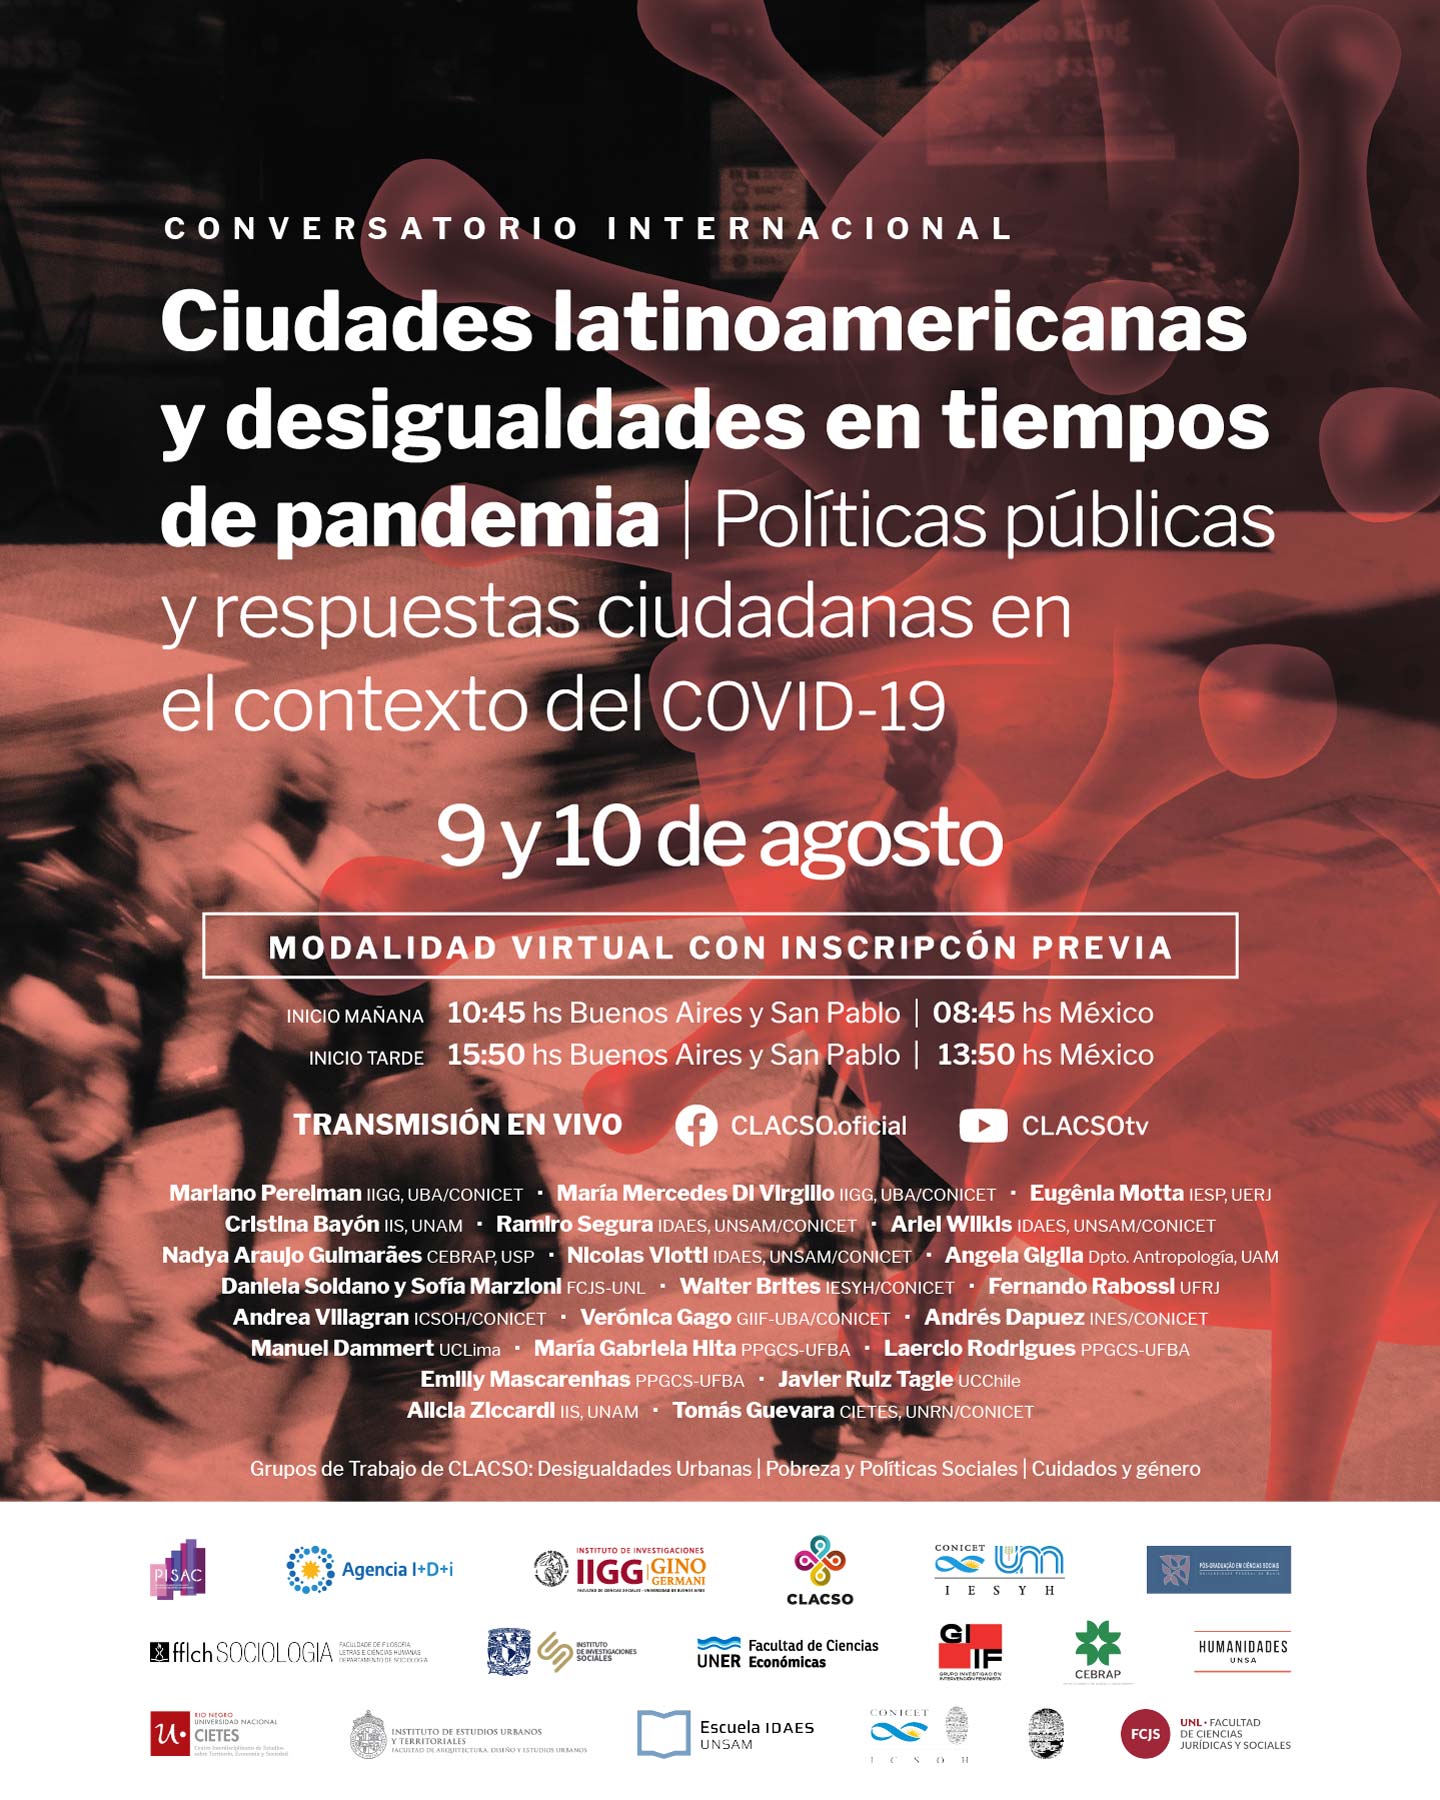 Conversatorio internacional: Ciudades latinoamericanas y desigualdades en tiempos de pandemia: Políticas públicas y respuestas ciudadanas en el contexto del COVID 19